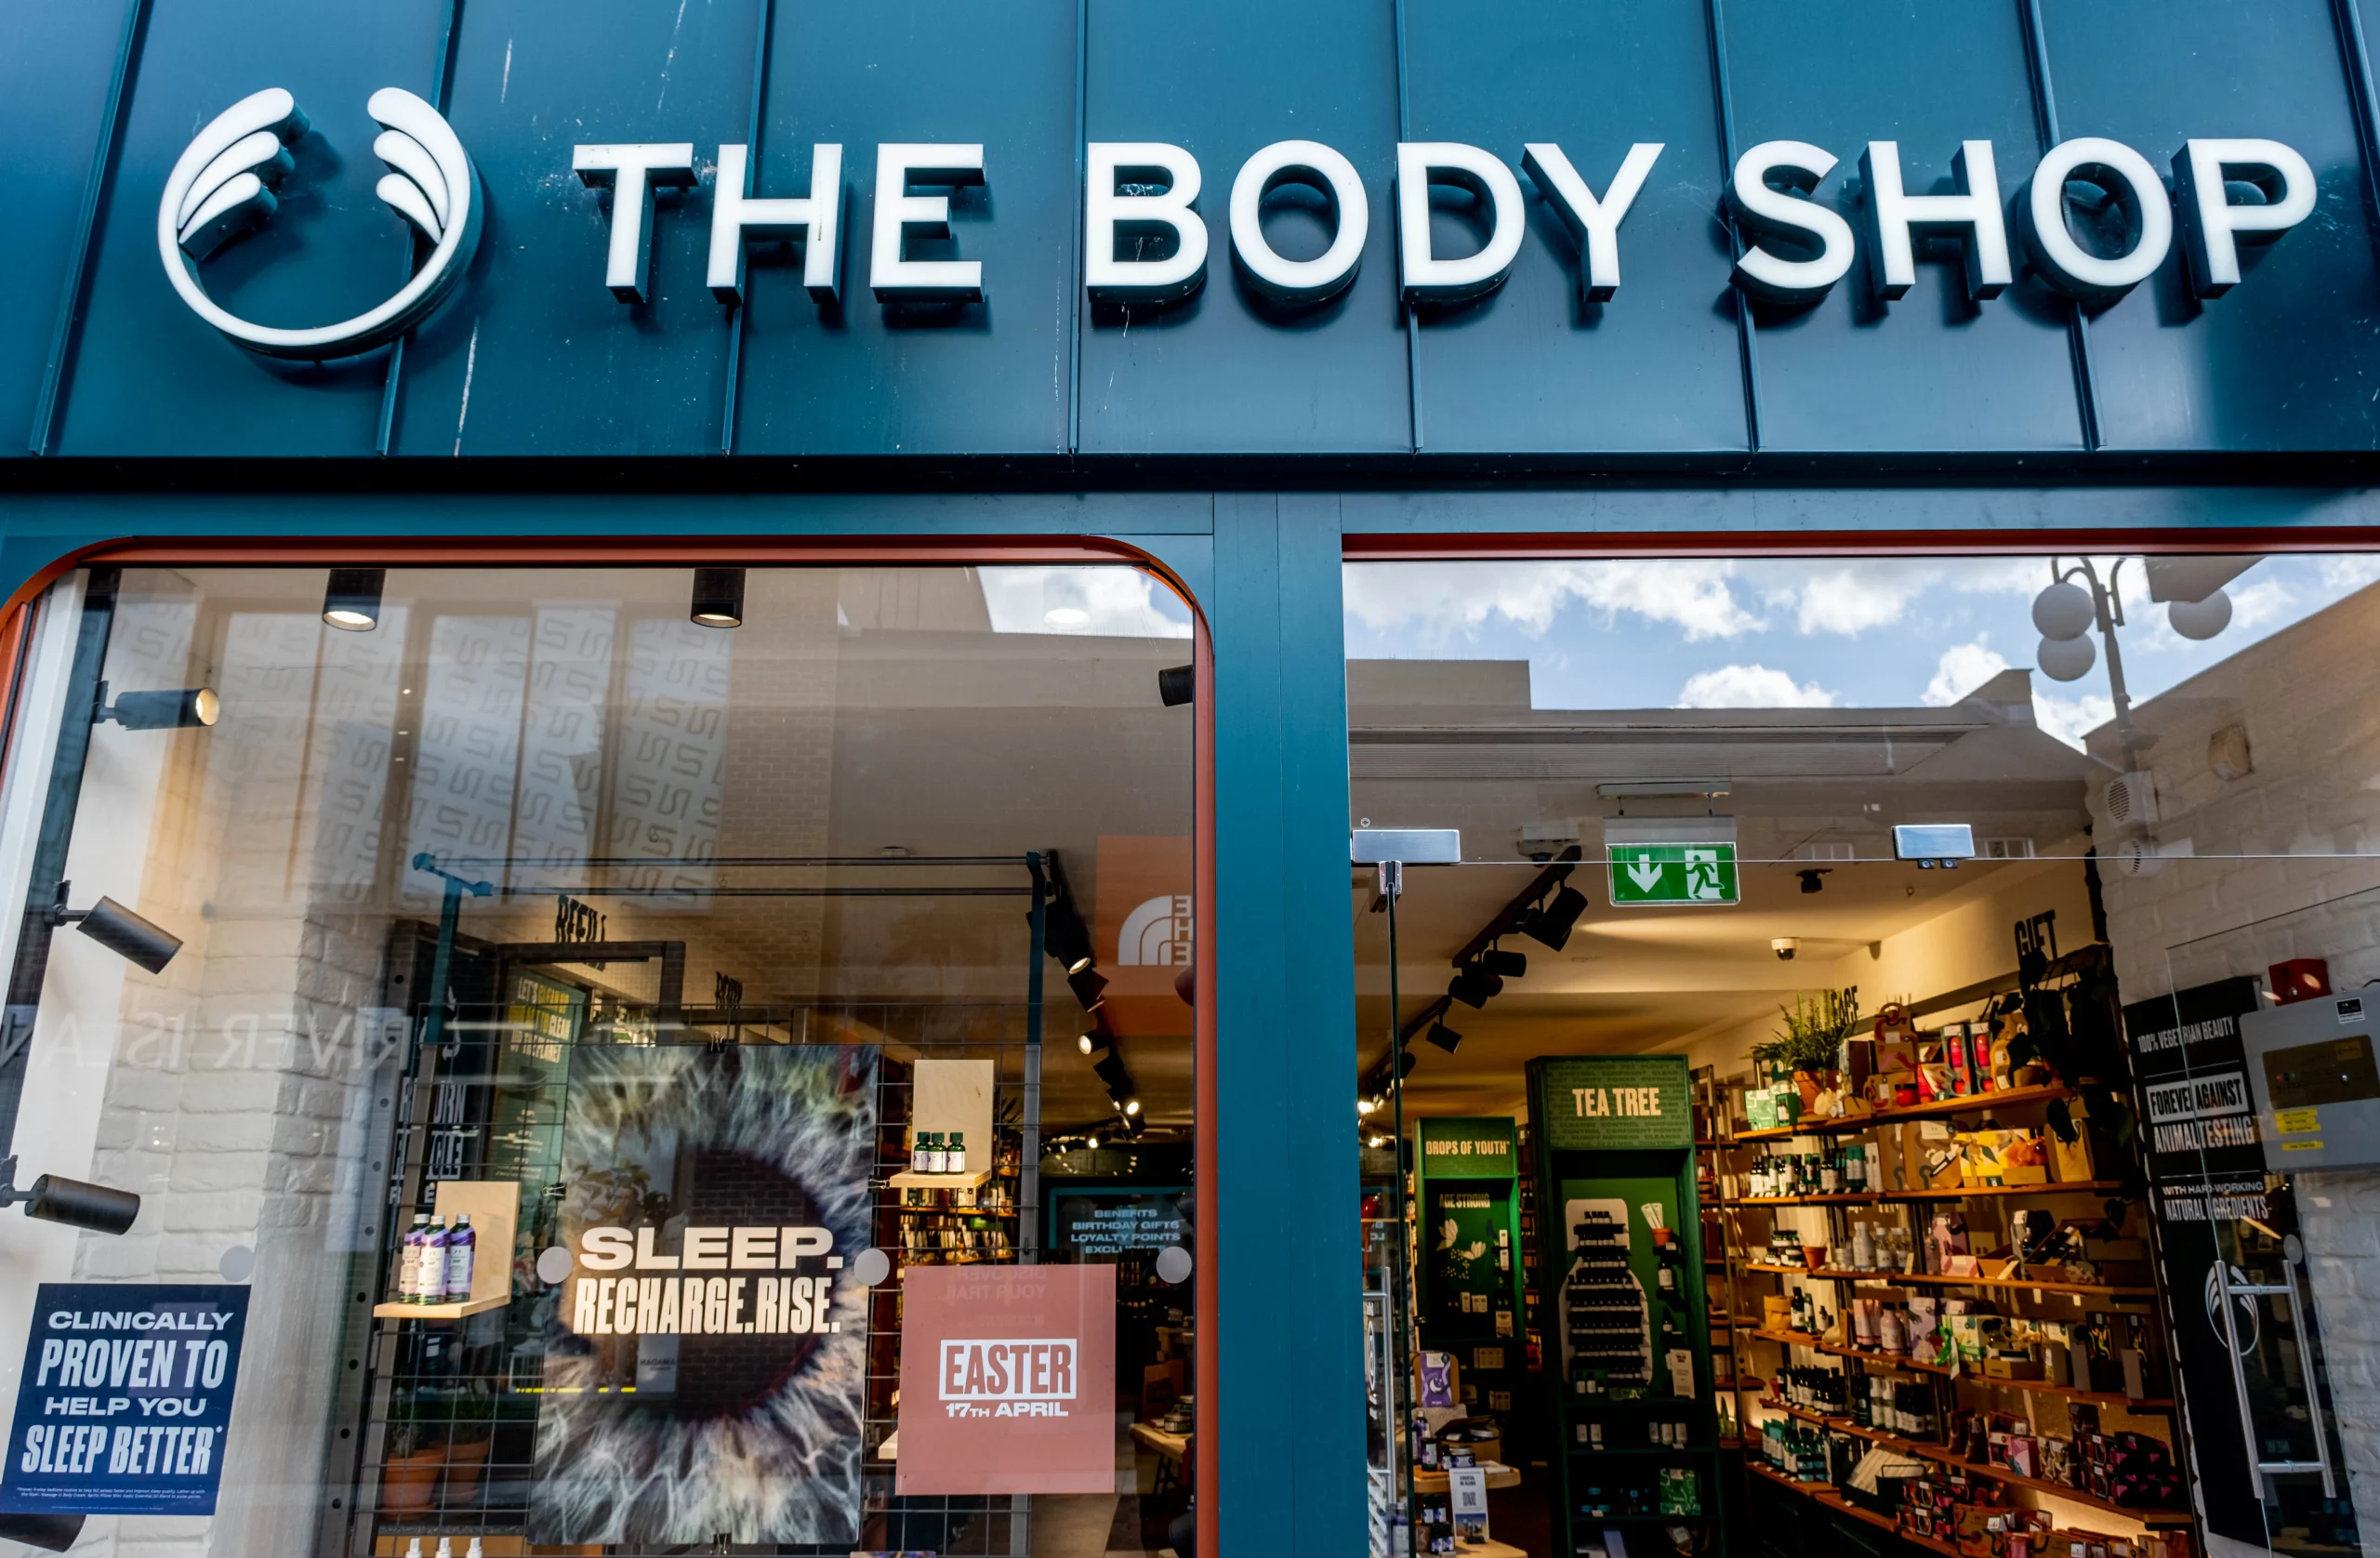 The Body Shop. Buyer beware?